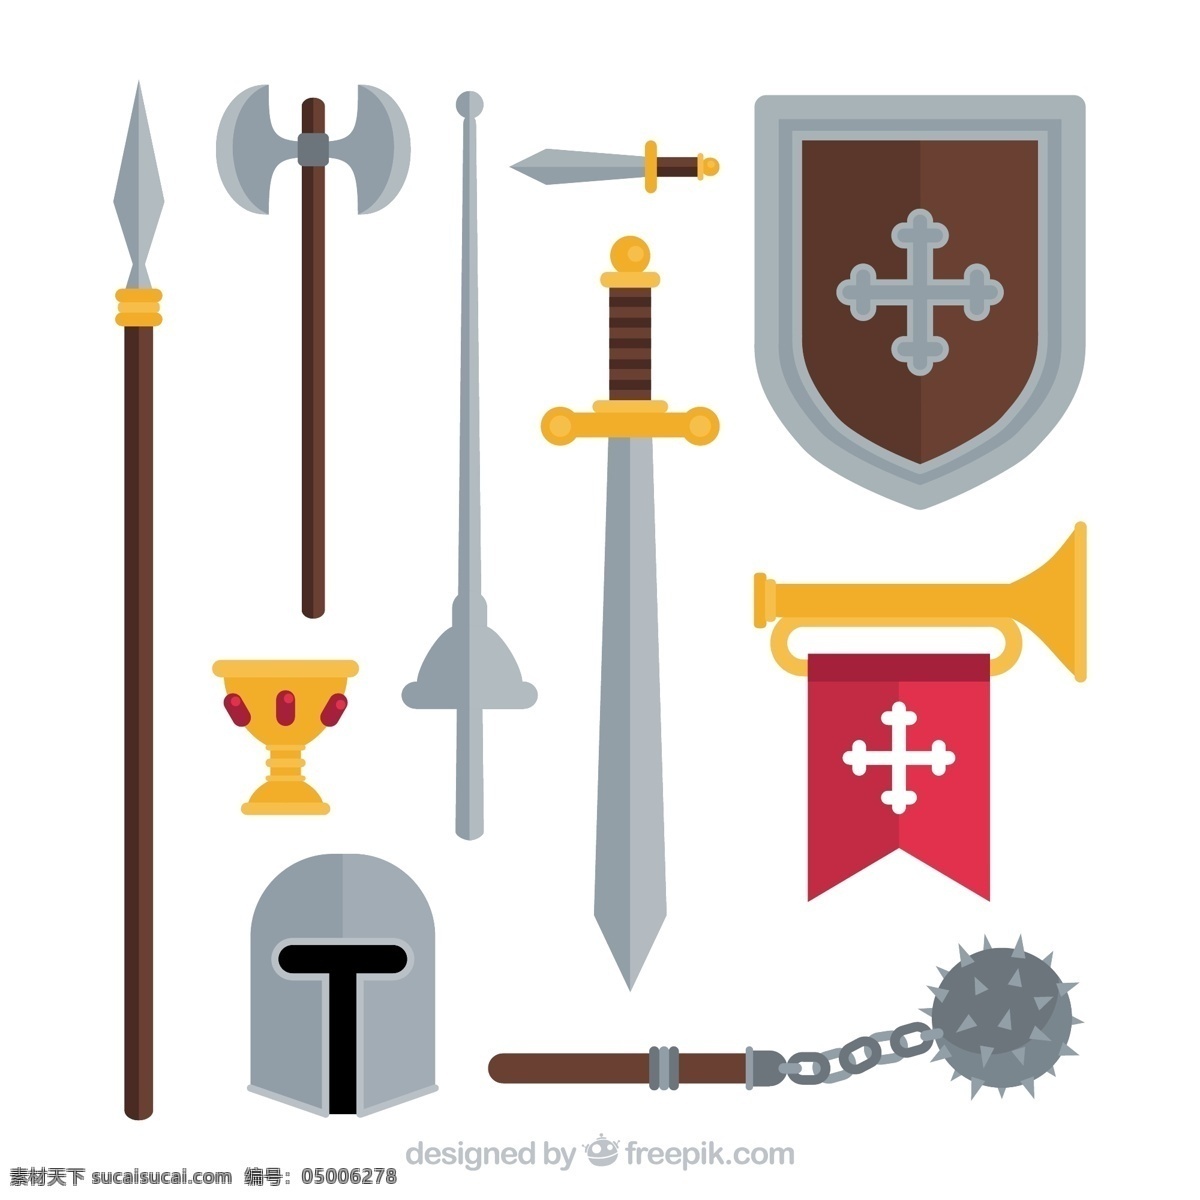 卡通 中世纪 武士 元素 武士的元素 武士素材 武士兵器 头盔 刀剑 盾牌 矢量图 矢量素材